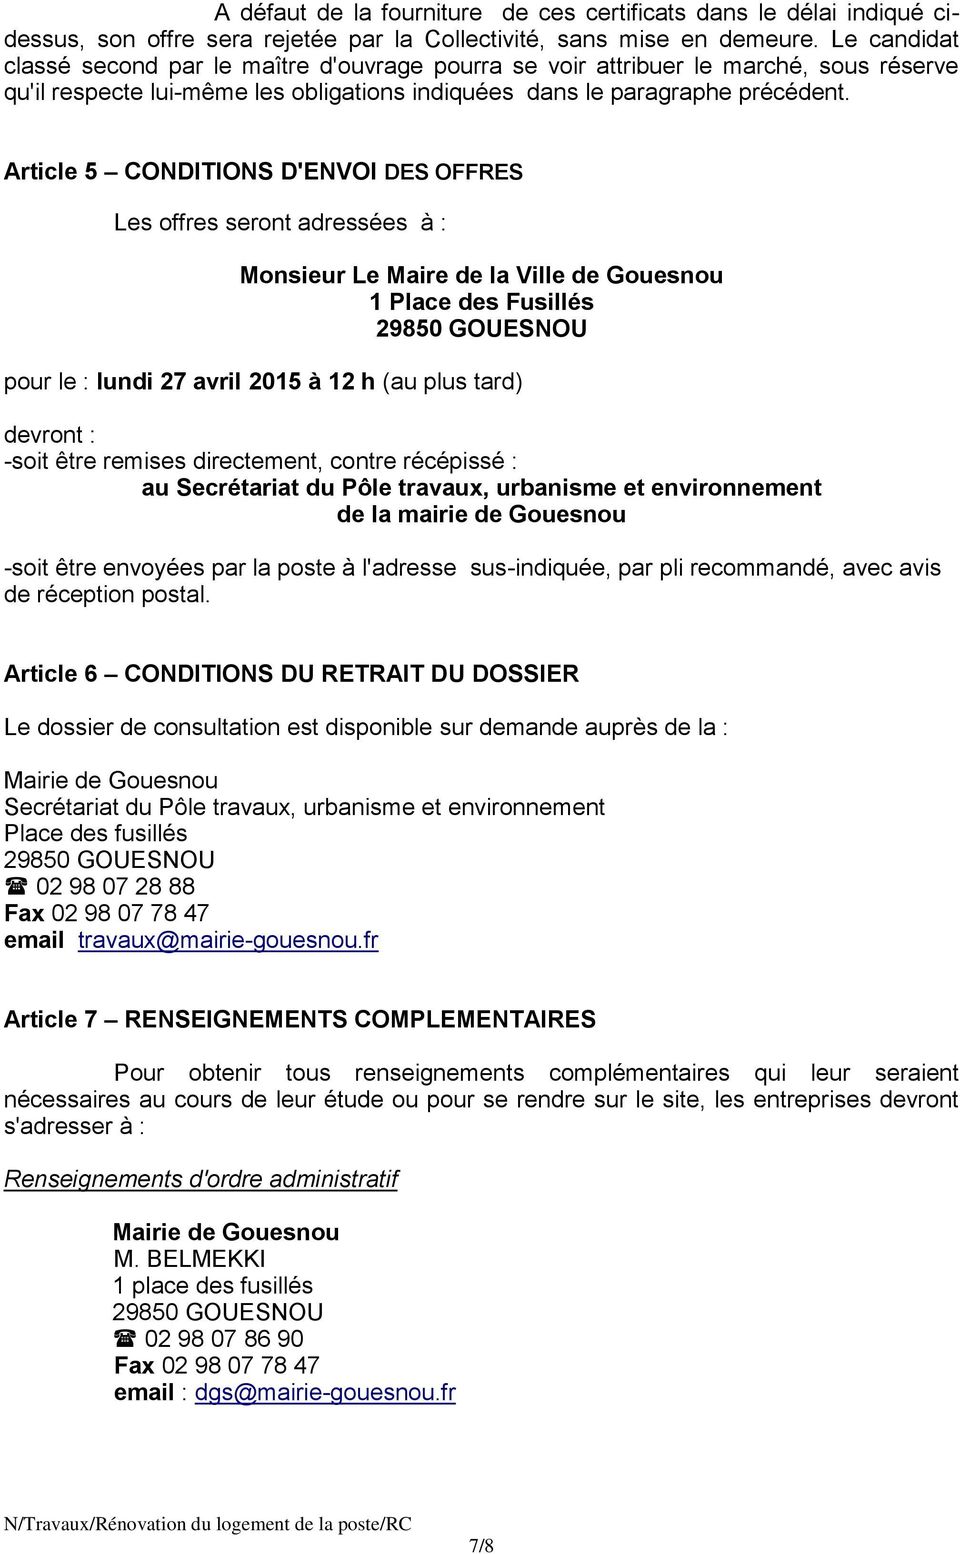 Article 5 CONDITIONS D'ENVOI DES OFFRES Les offres seront adressées à : Monsieur Le Maire de la Ville de Gouesnou 1 Place des Fusillés pour le : lundi 27 avril 2015 à 12 h (au plus tard) devront :